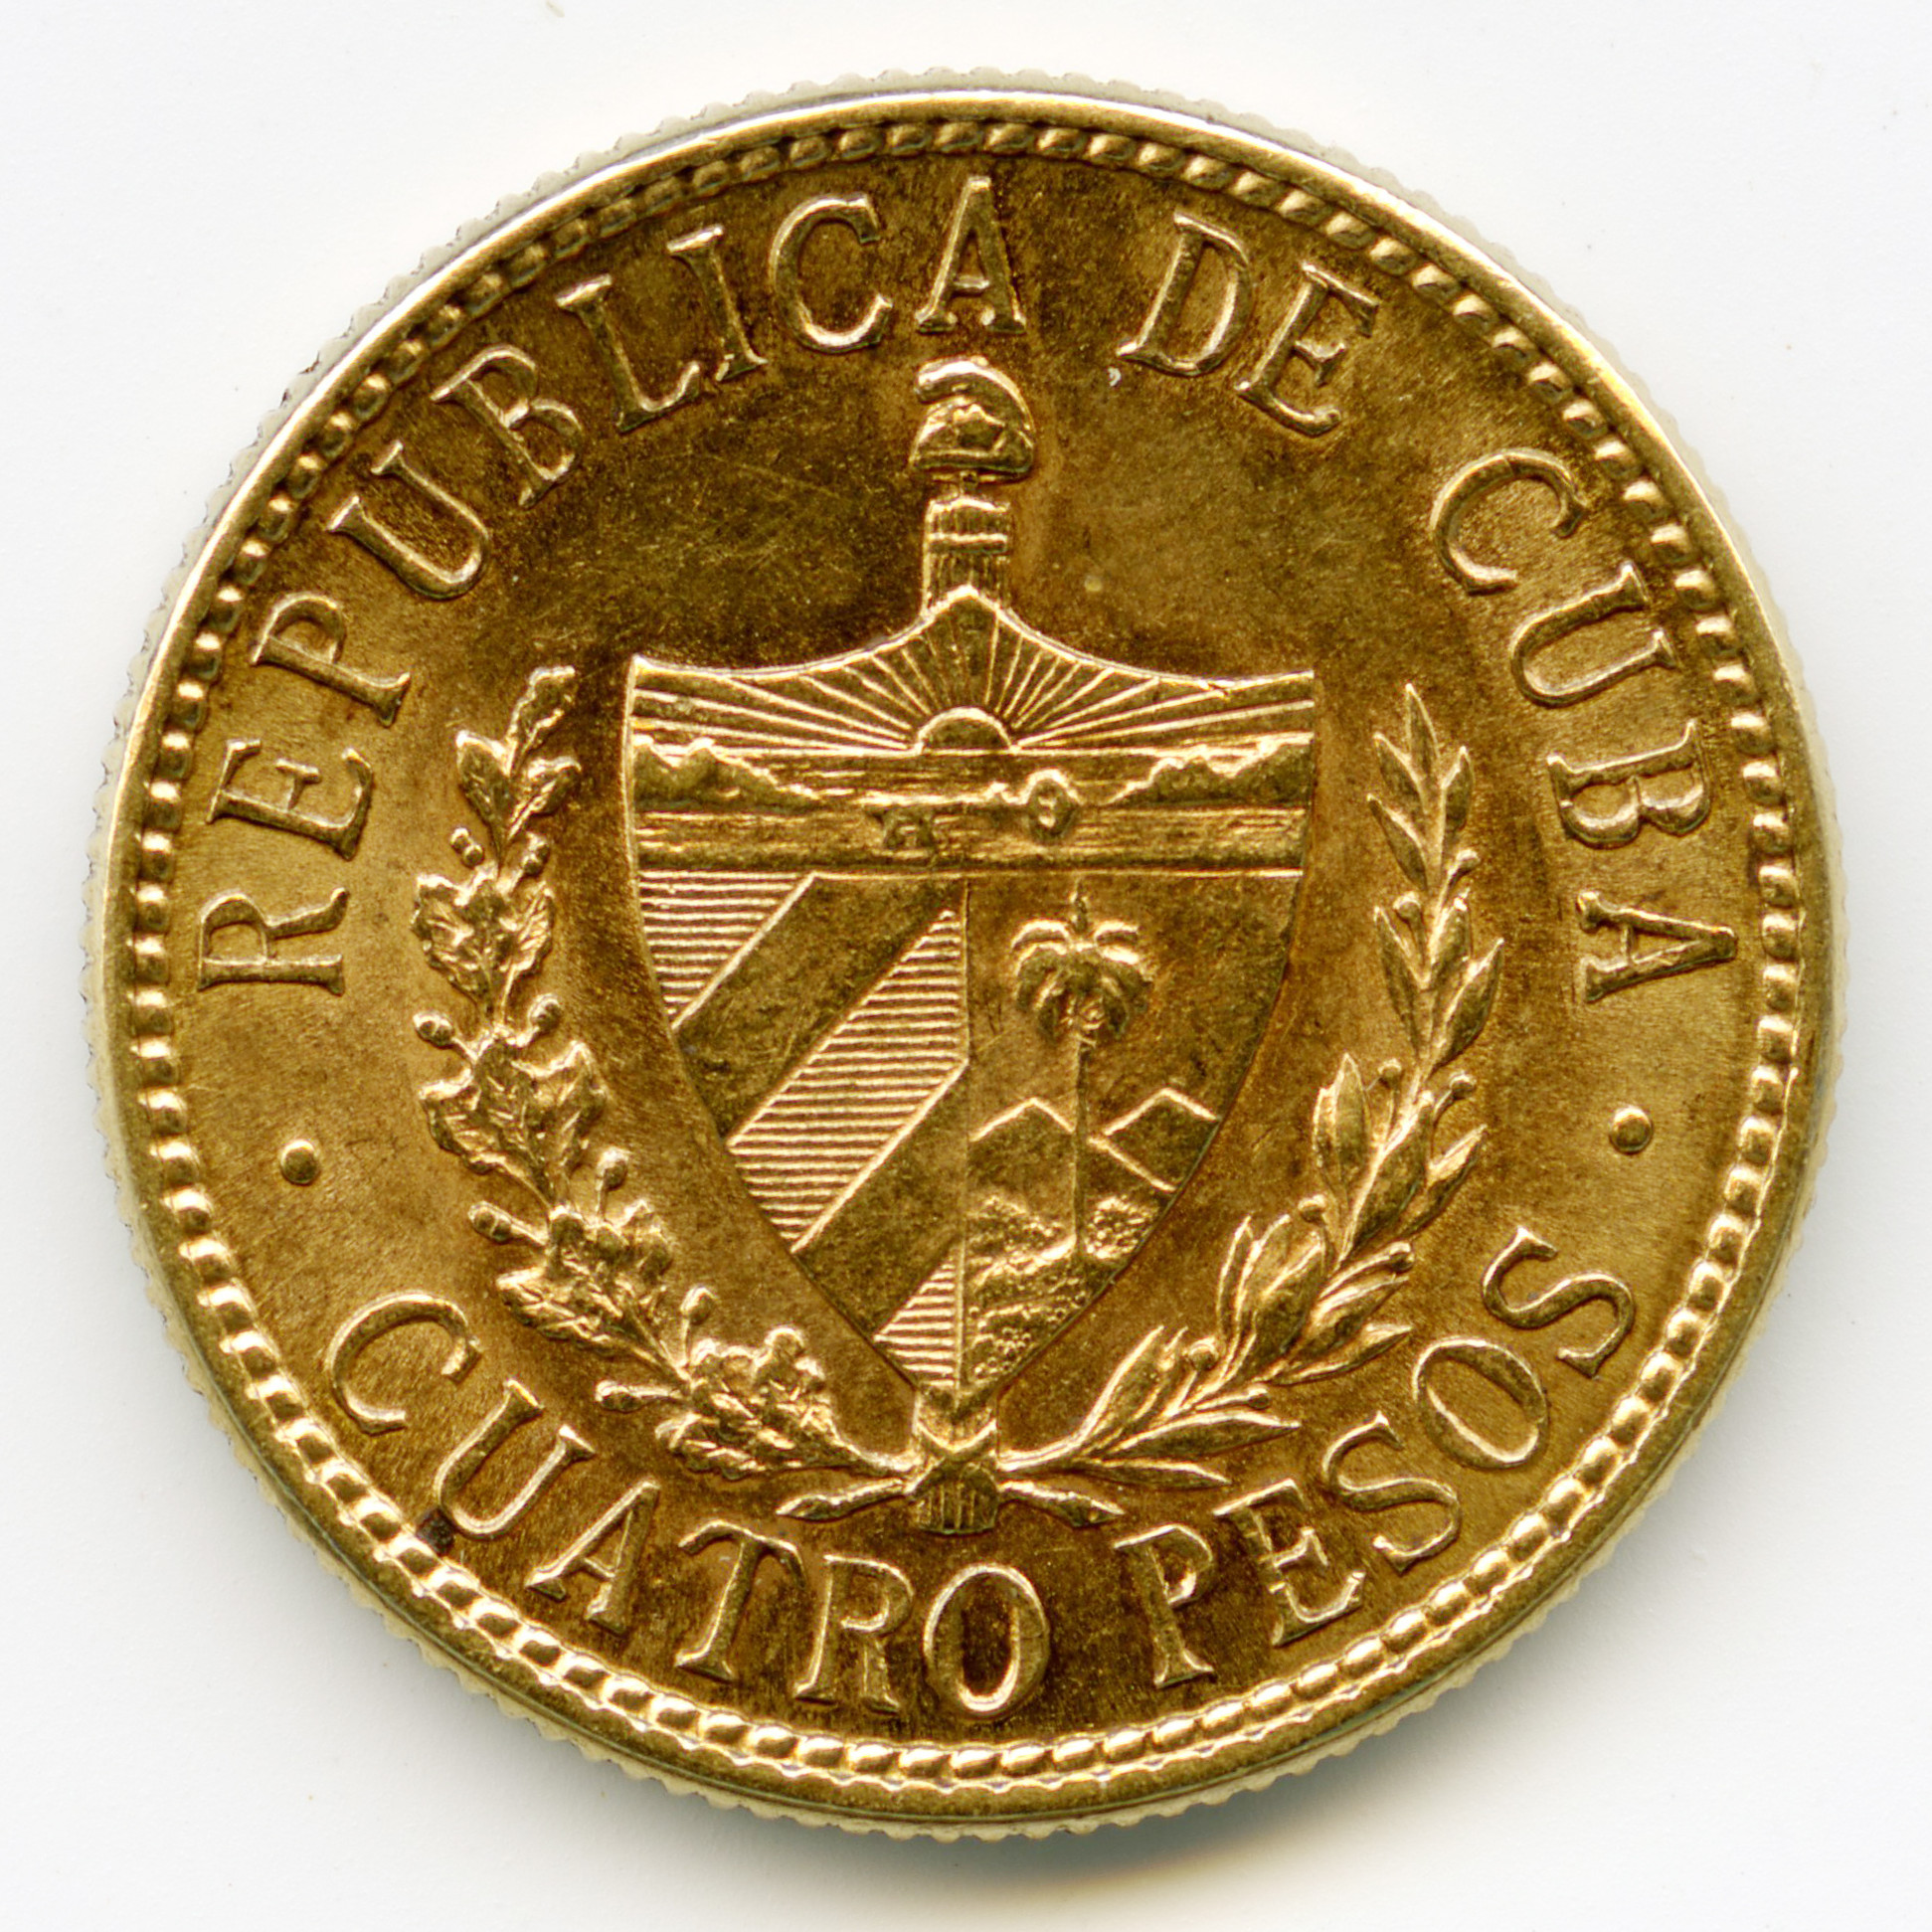 Cuba - 4 Pesos - 1916 revers